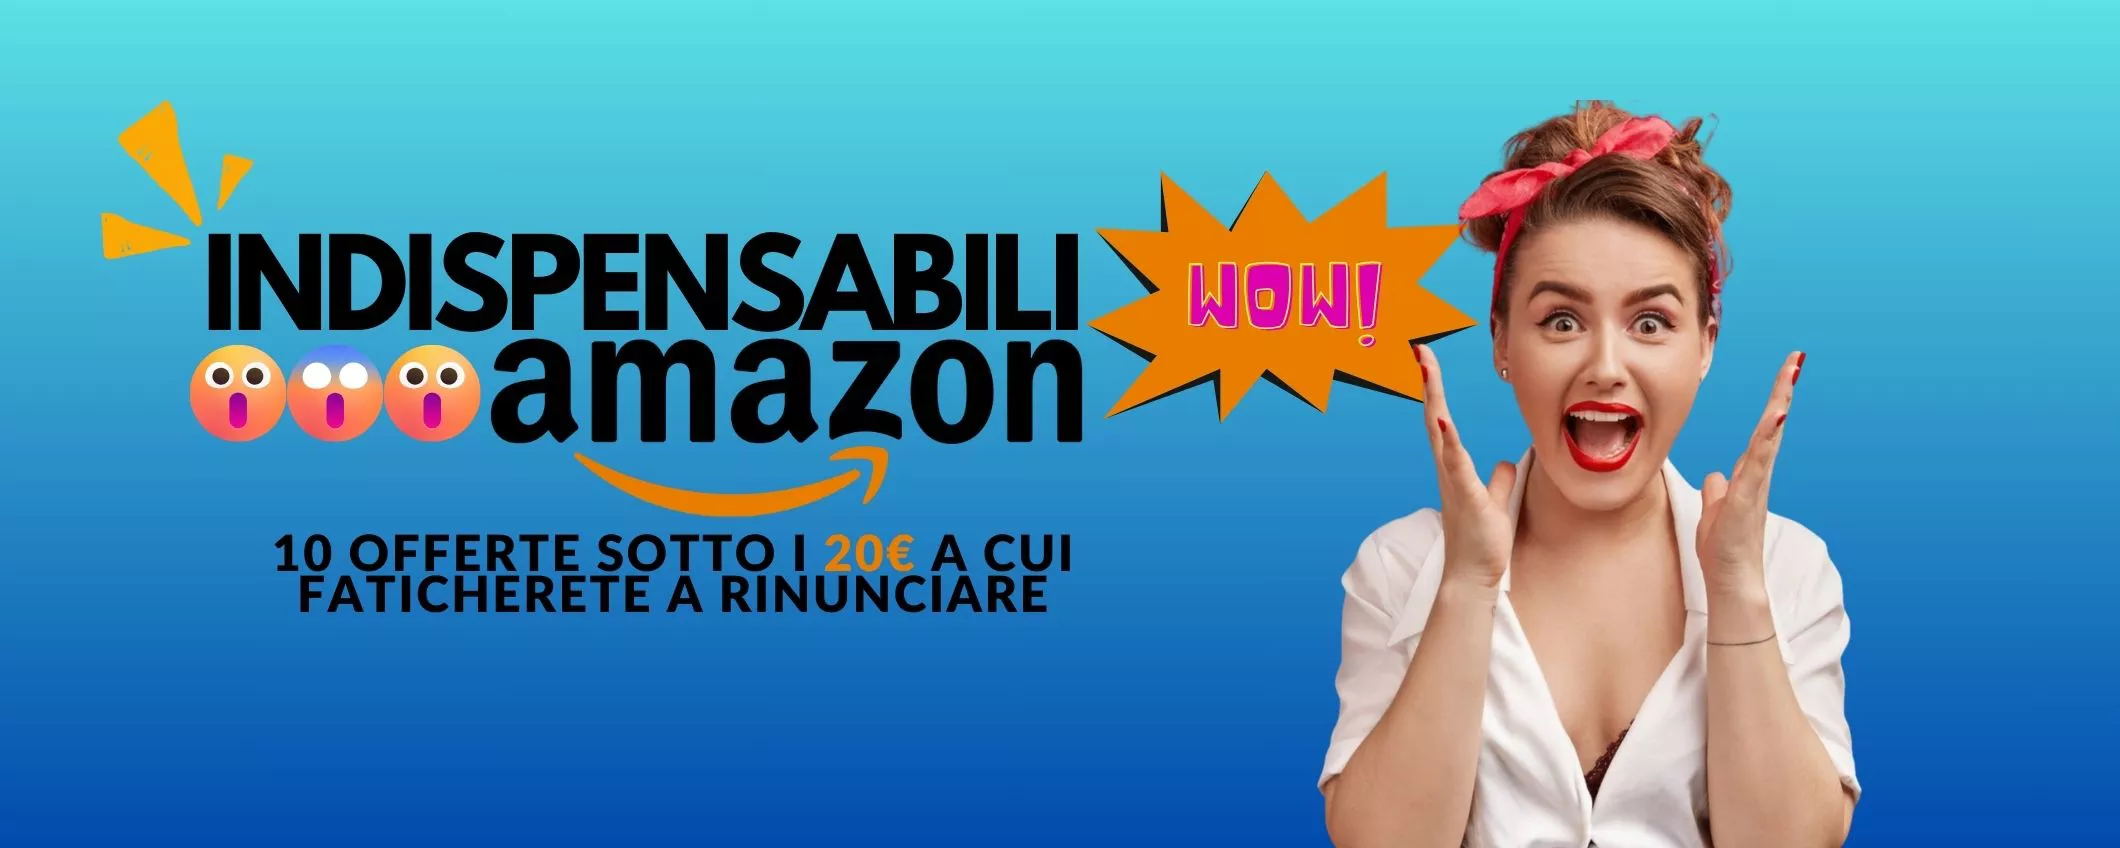 INDISPENSABILI Amazon: 10 offerte sotto i 20€ a cui FATICHERETE a RINUNCIARE